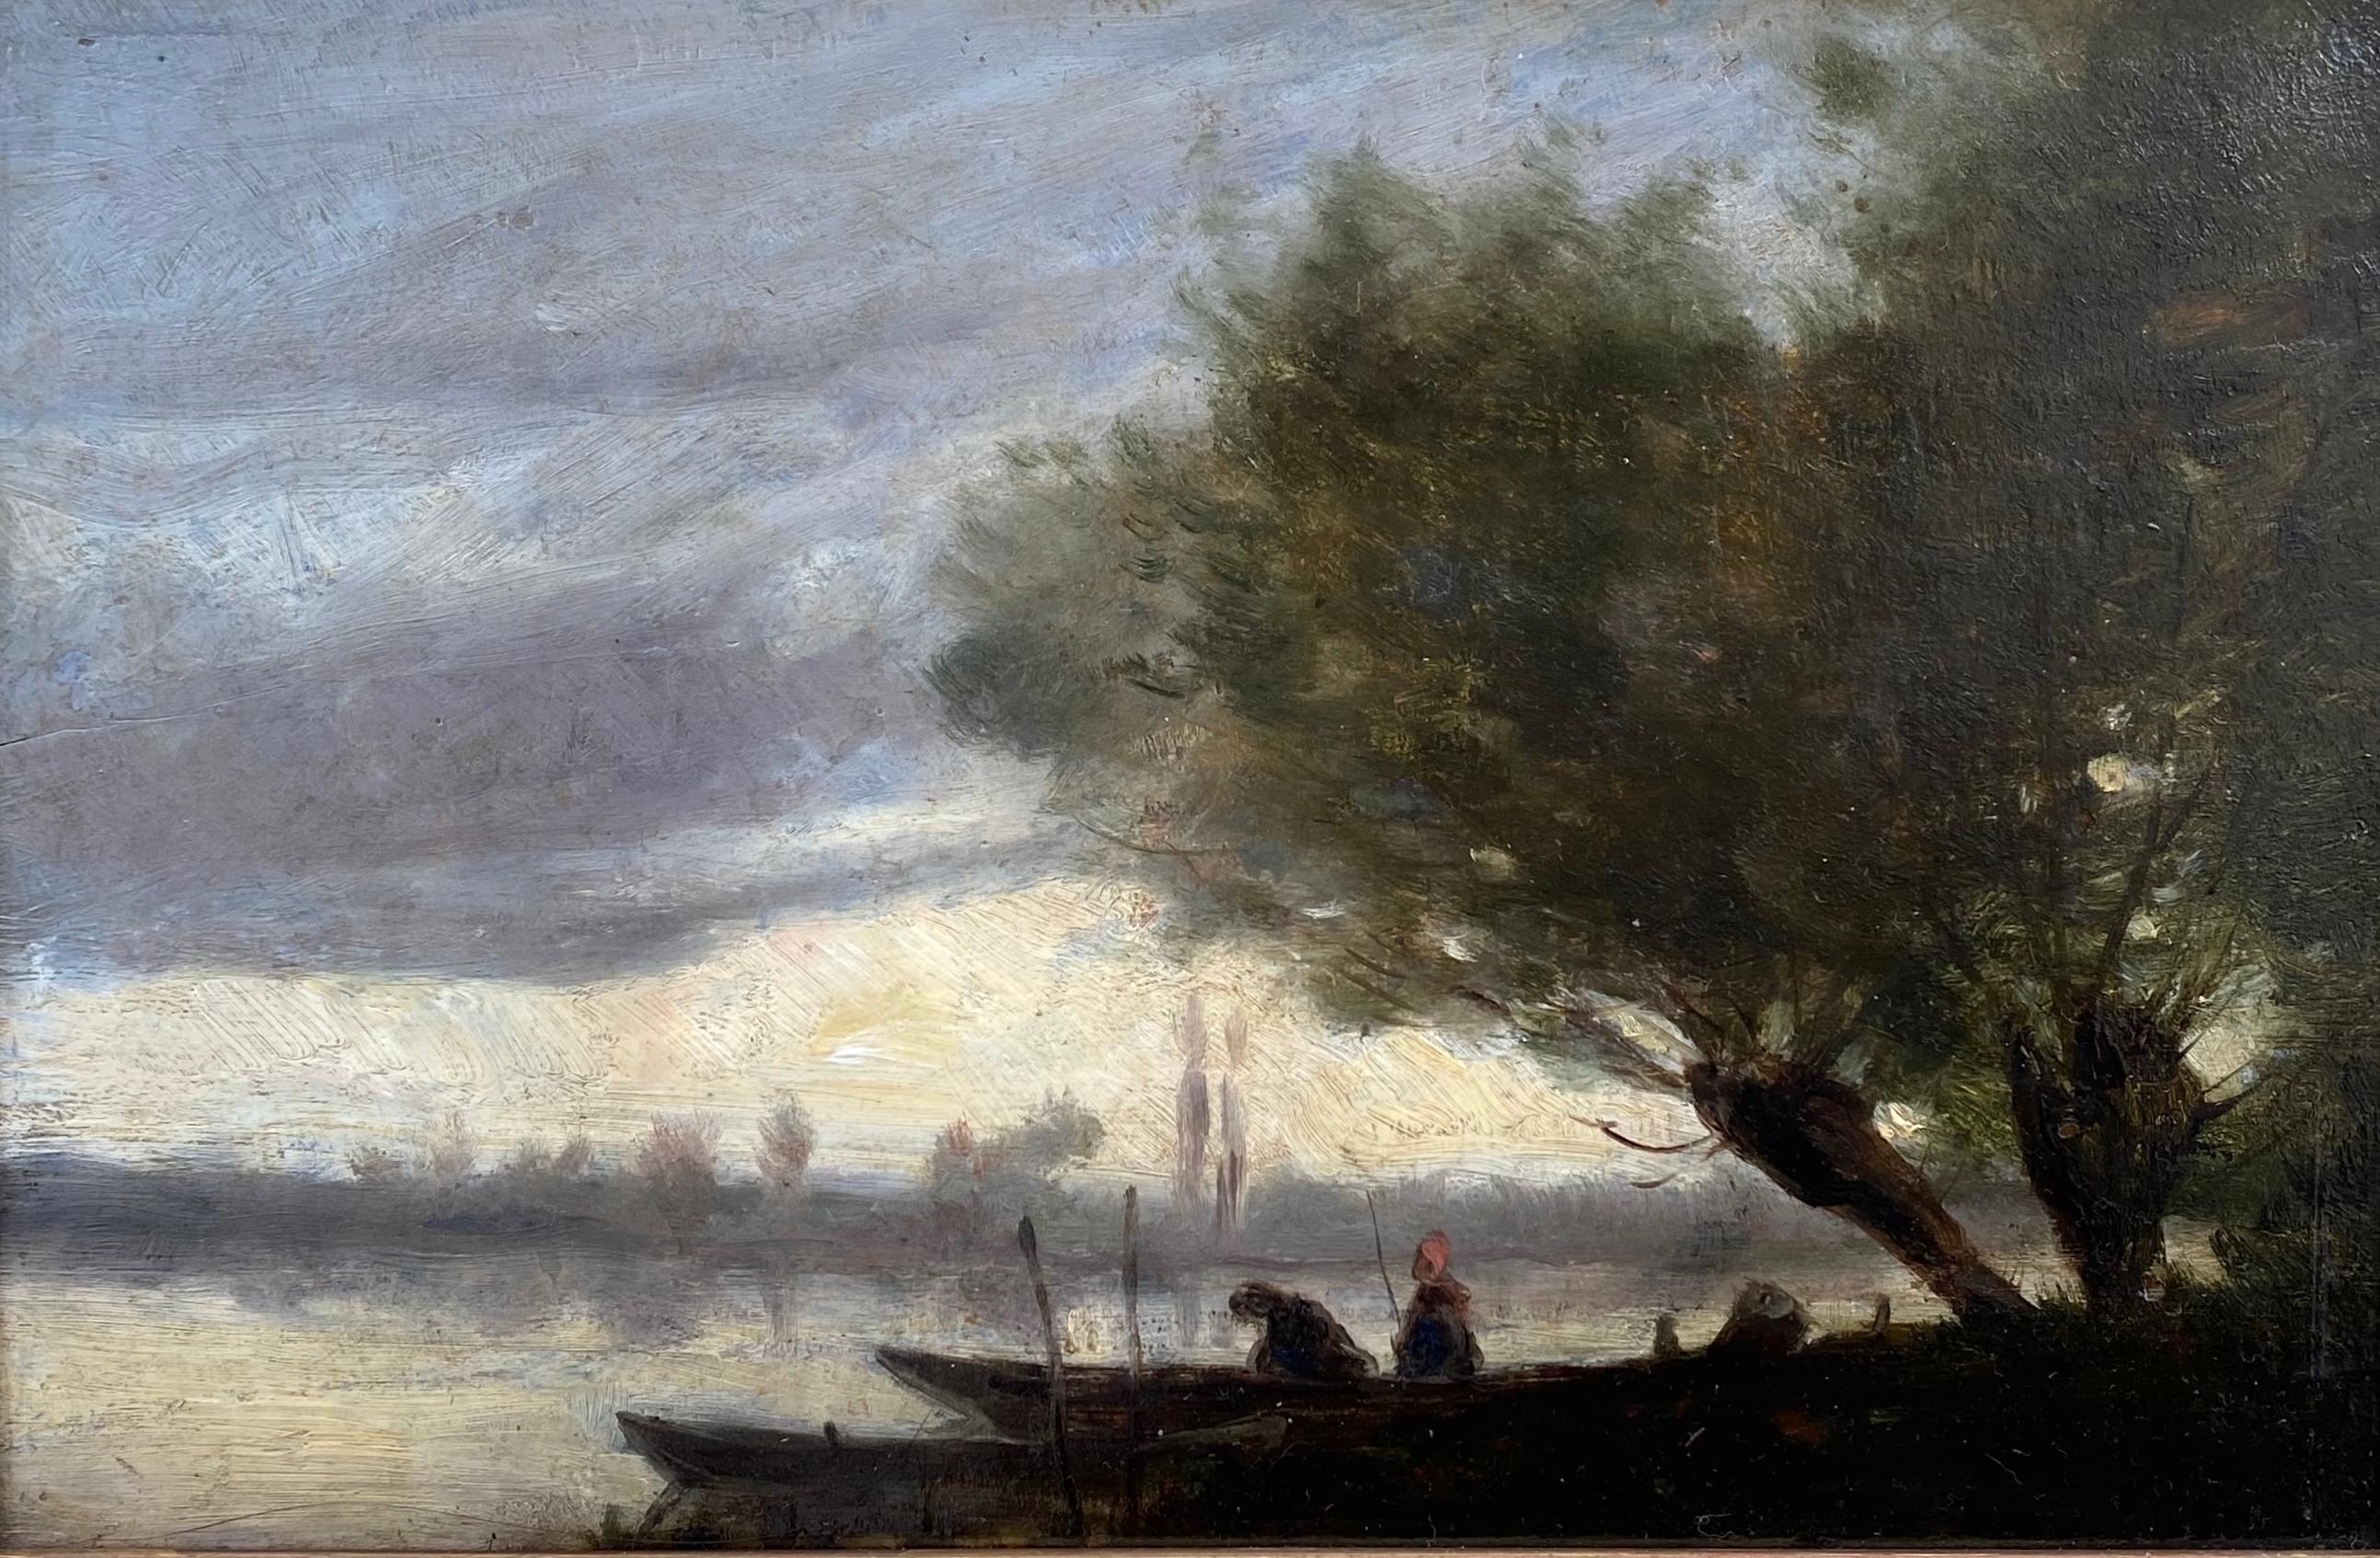 Fishing by Moonlight manner of Corot: Mooonlit Lake Französisch Barbizon Ölgemälde (Schule von Barbizon), Painting, von Jean-Baptiste-Camille Corot